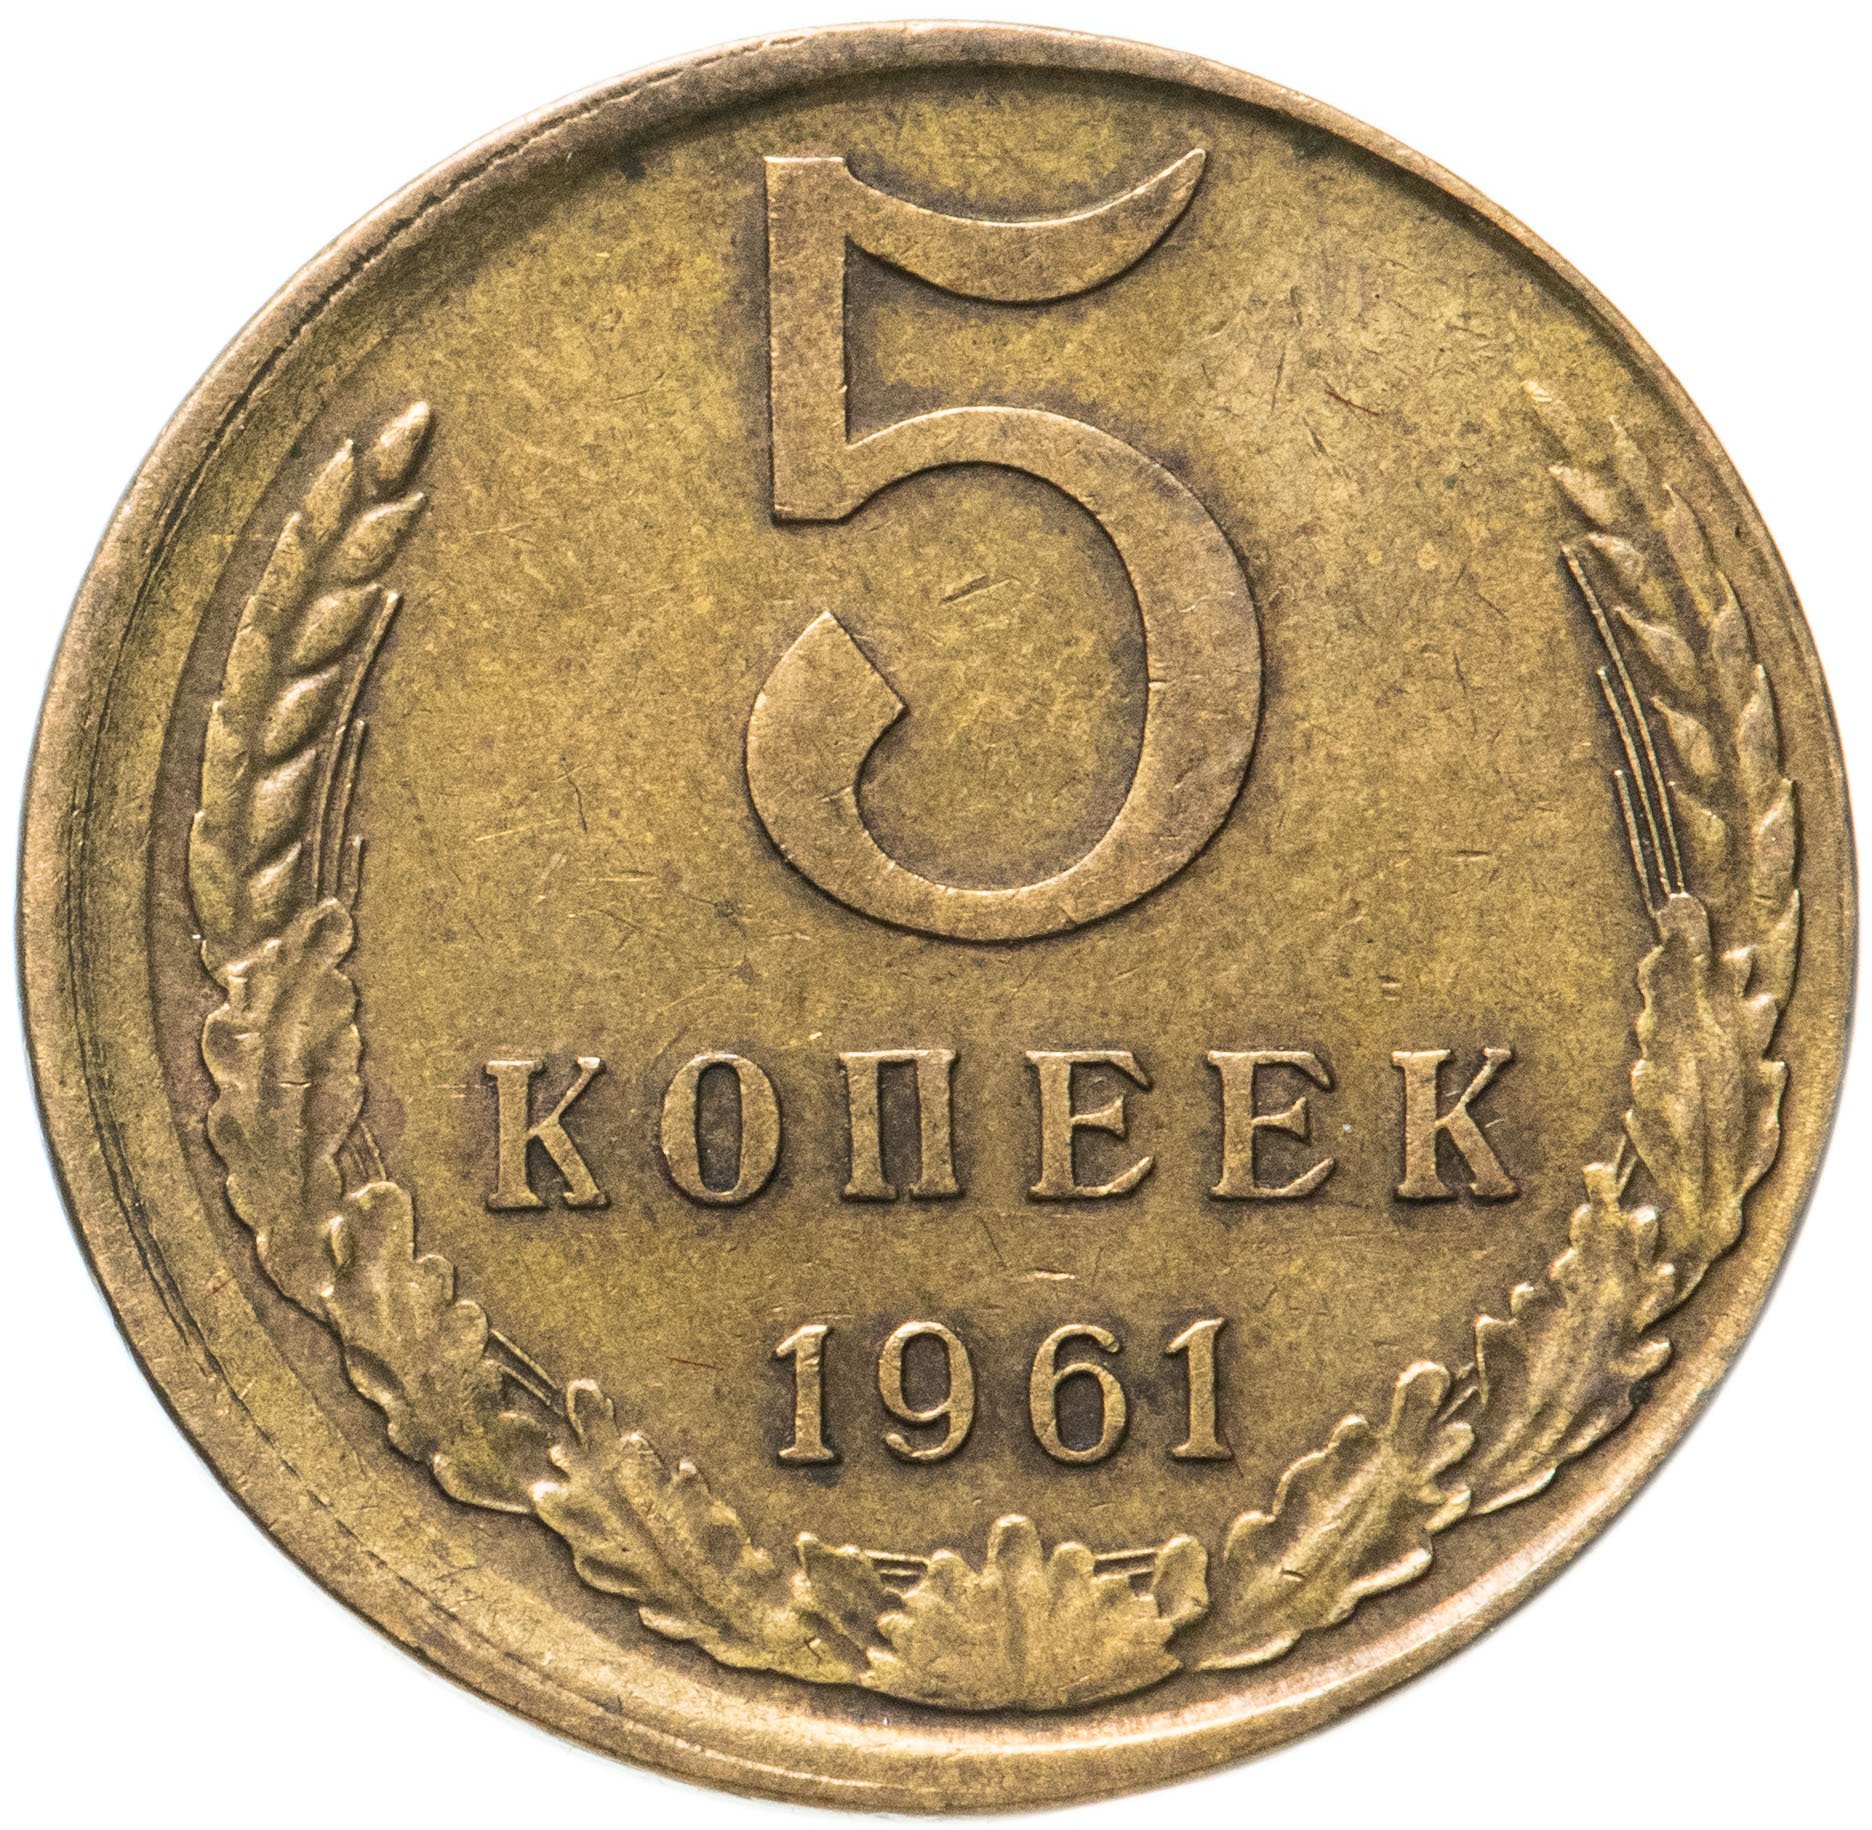 Советские монеты. Монета 2 копейки. Монеты СССР до 1961 года. Копейка монета. 5 копейки 1961 года цена стоимость монеты